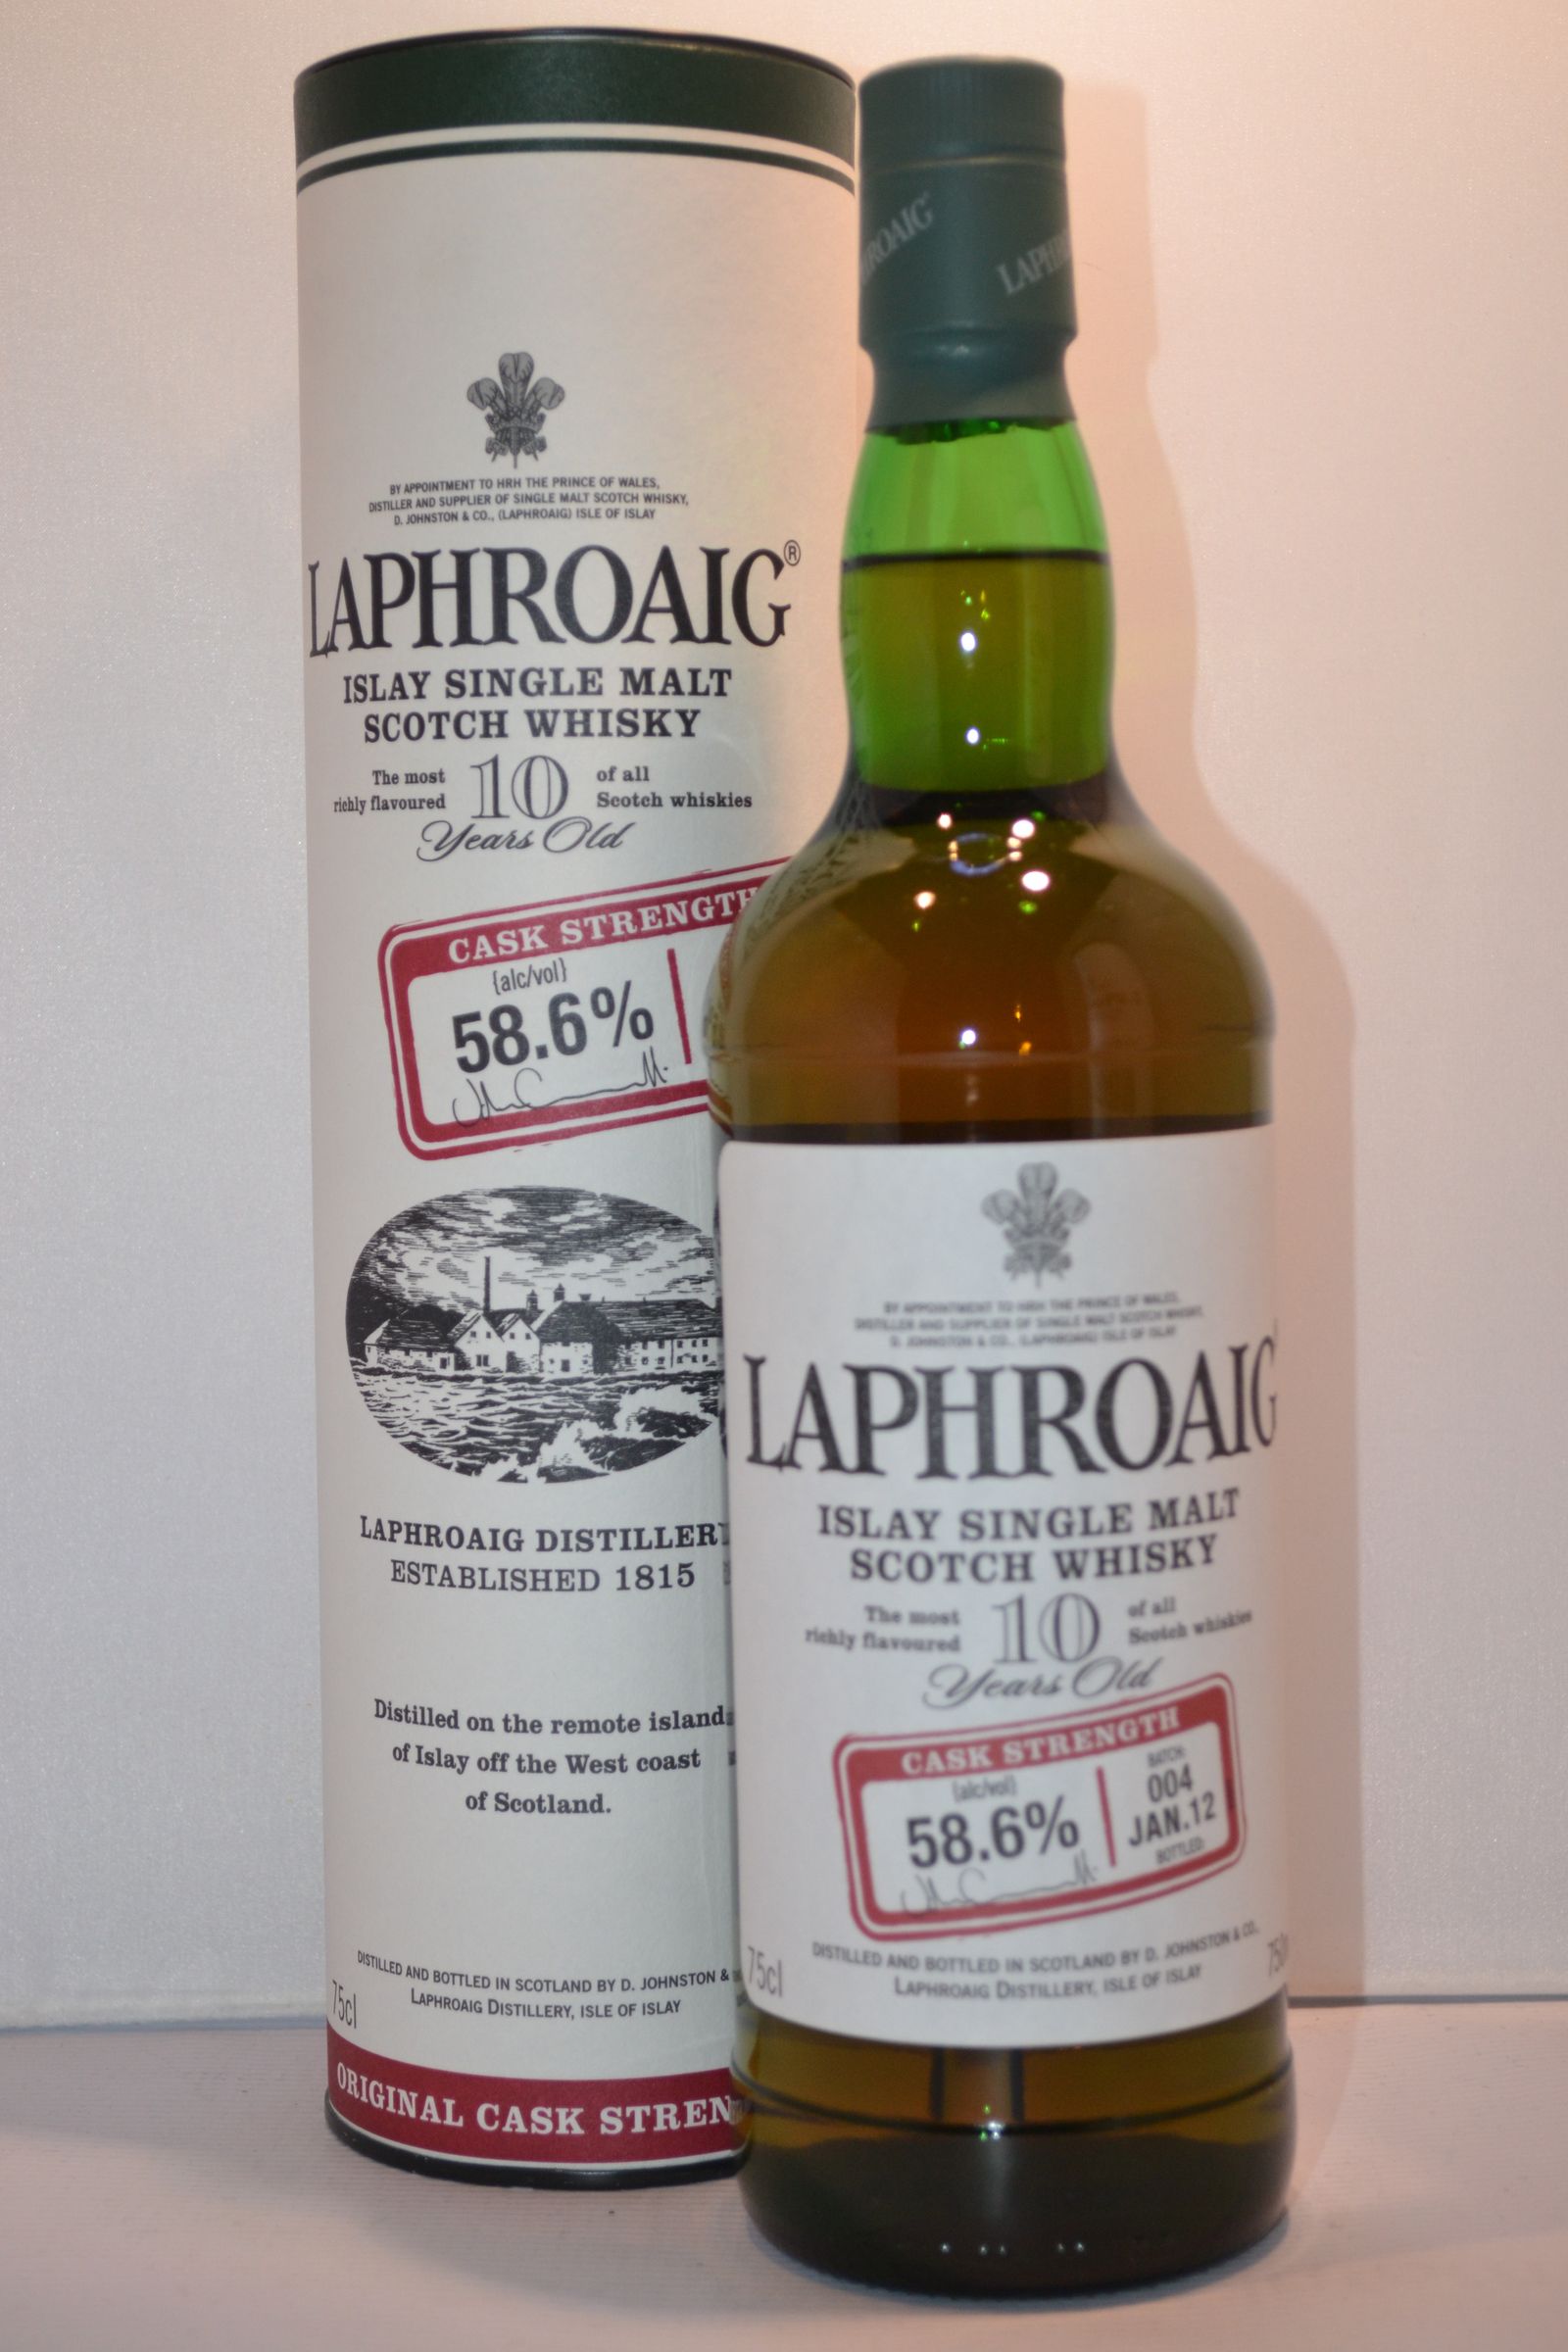 Laphroaig Islay Single Malt Scotch Whisky 10 Yr. 750ml.